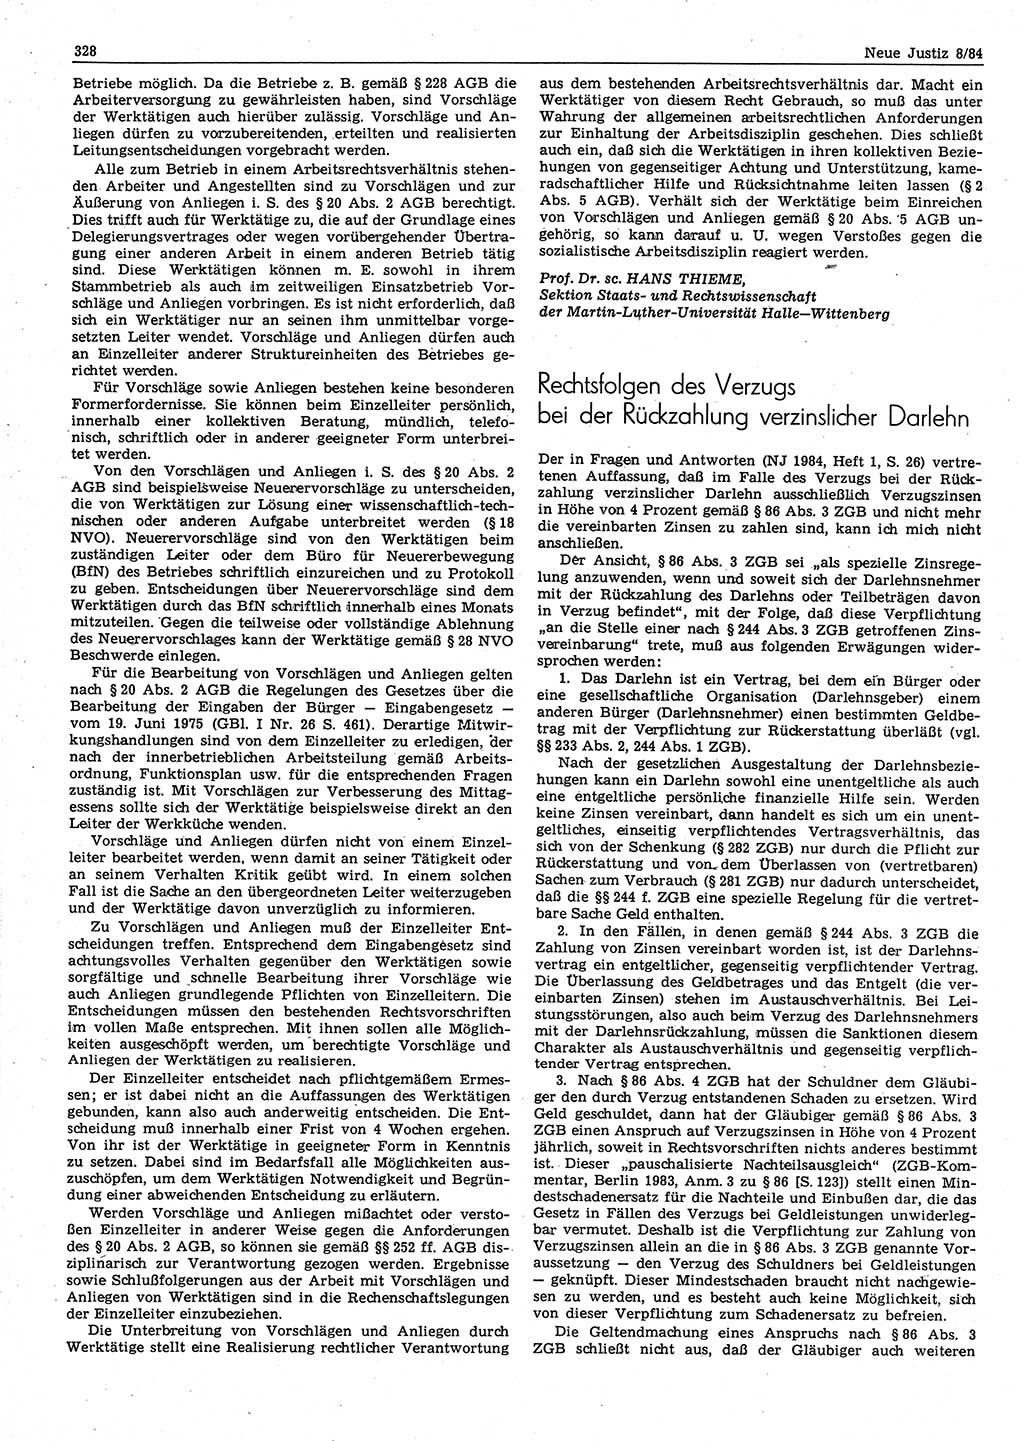 Neue Justiz (NJ), Zeitschrift für sozialistisches Recht und Gesetzlichkeit [Deutsche Demokratische Republik (DDR)], 38. Jahrgang 1984, Seite 328 (NJ DDR 1984, S. 328)